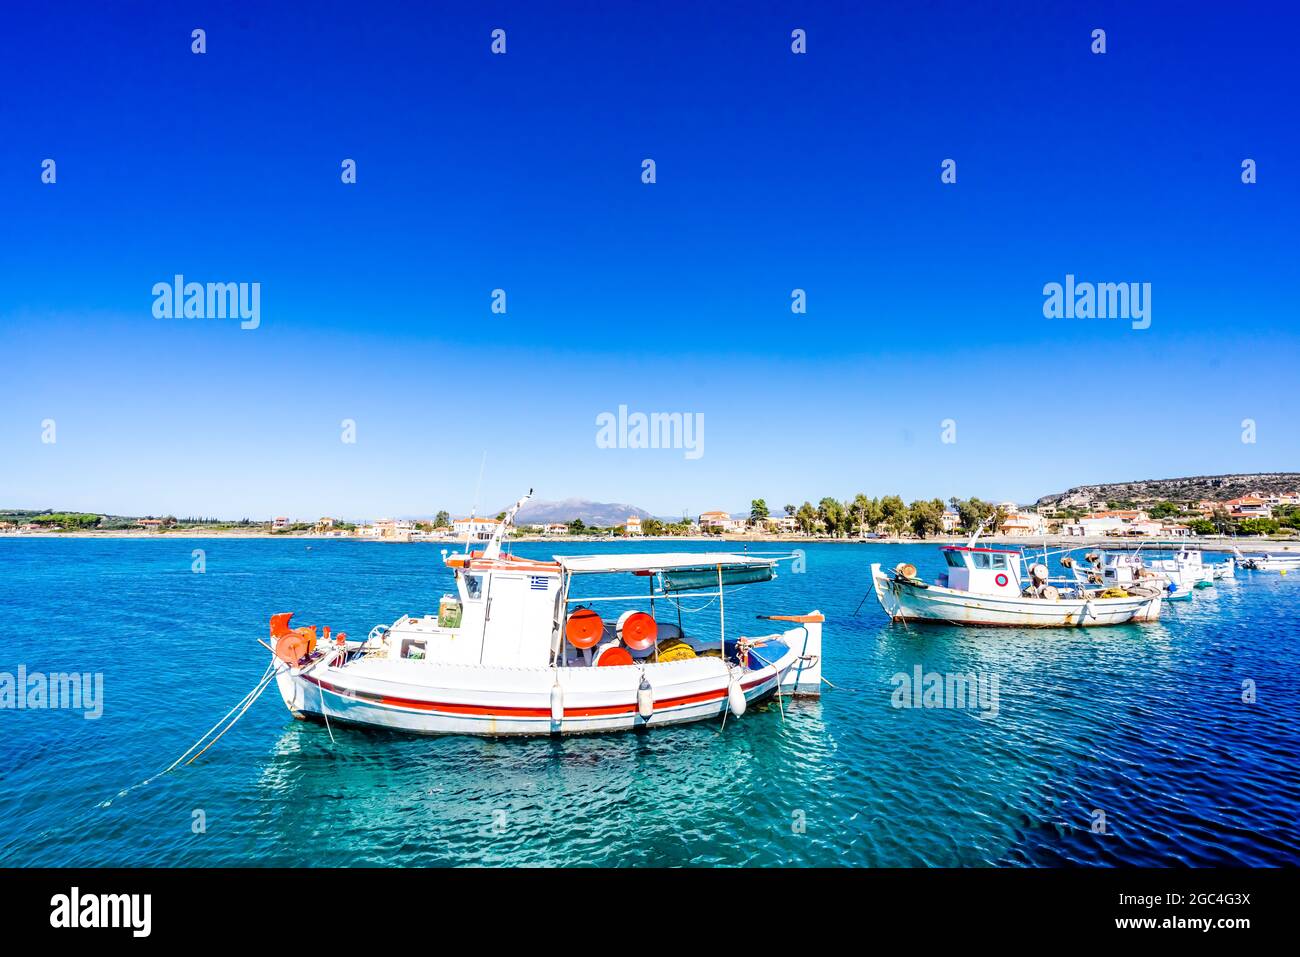 Bateaux de pêche dans le port de Plitra, Péloponnèse, Grèce Banque D'Images